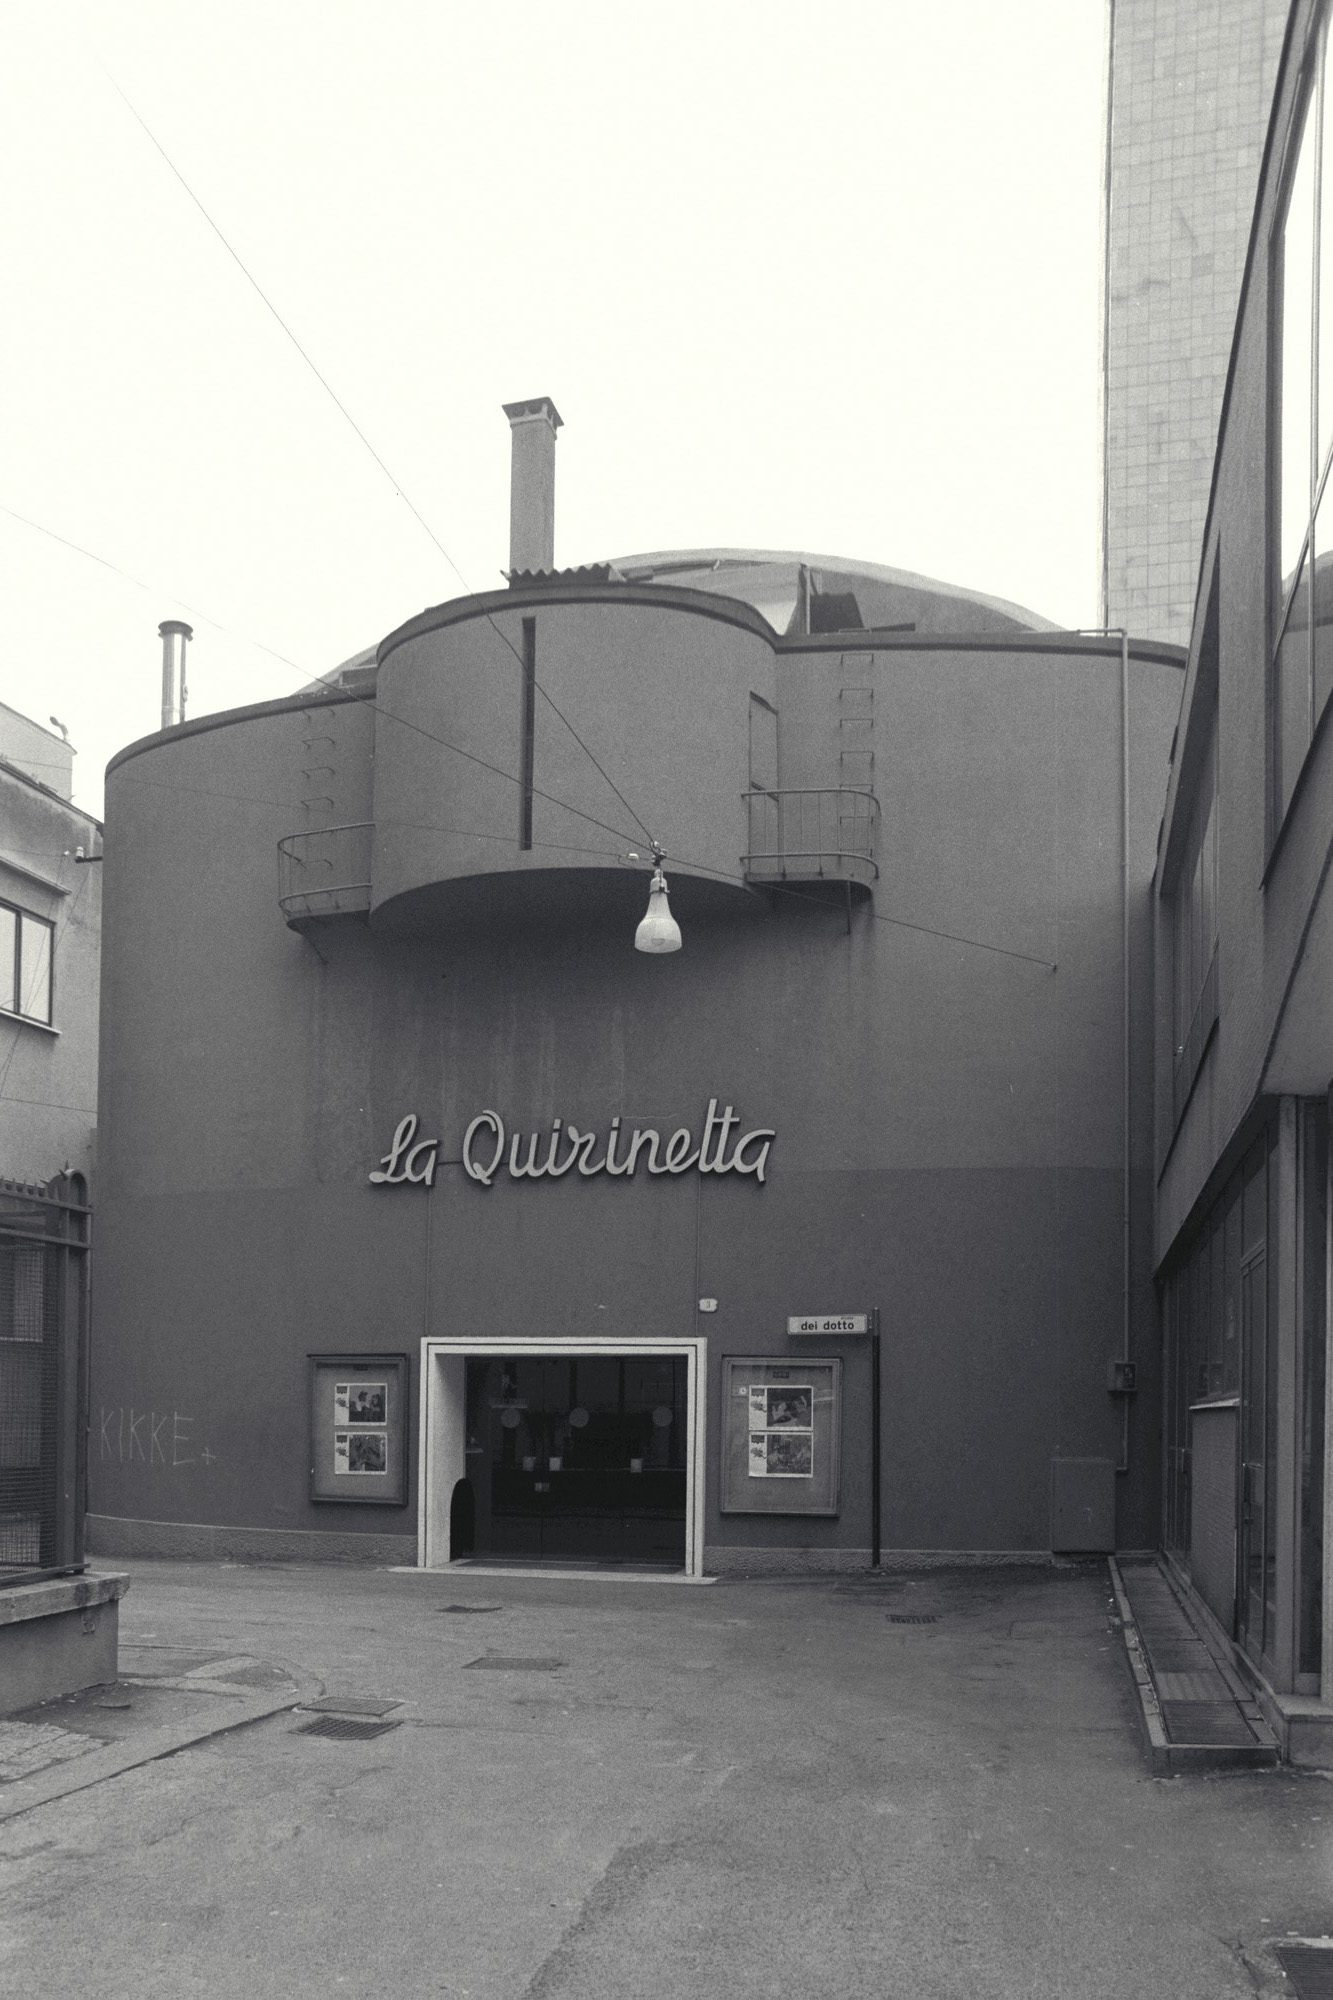 Quirinetta (cinema, privato) - Padova (PD) 